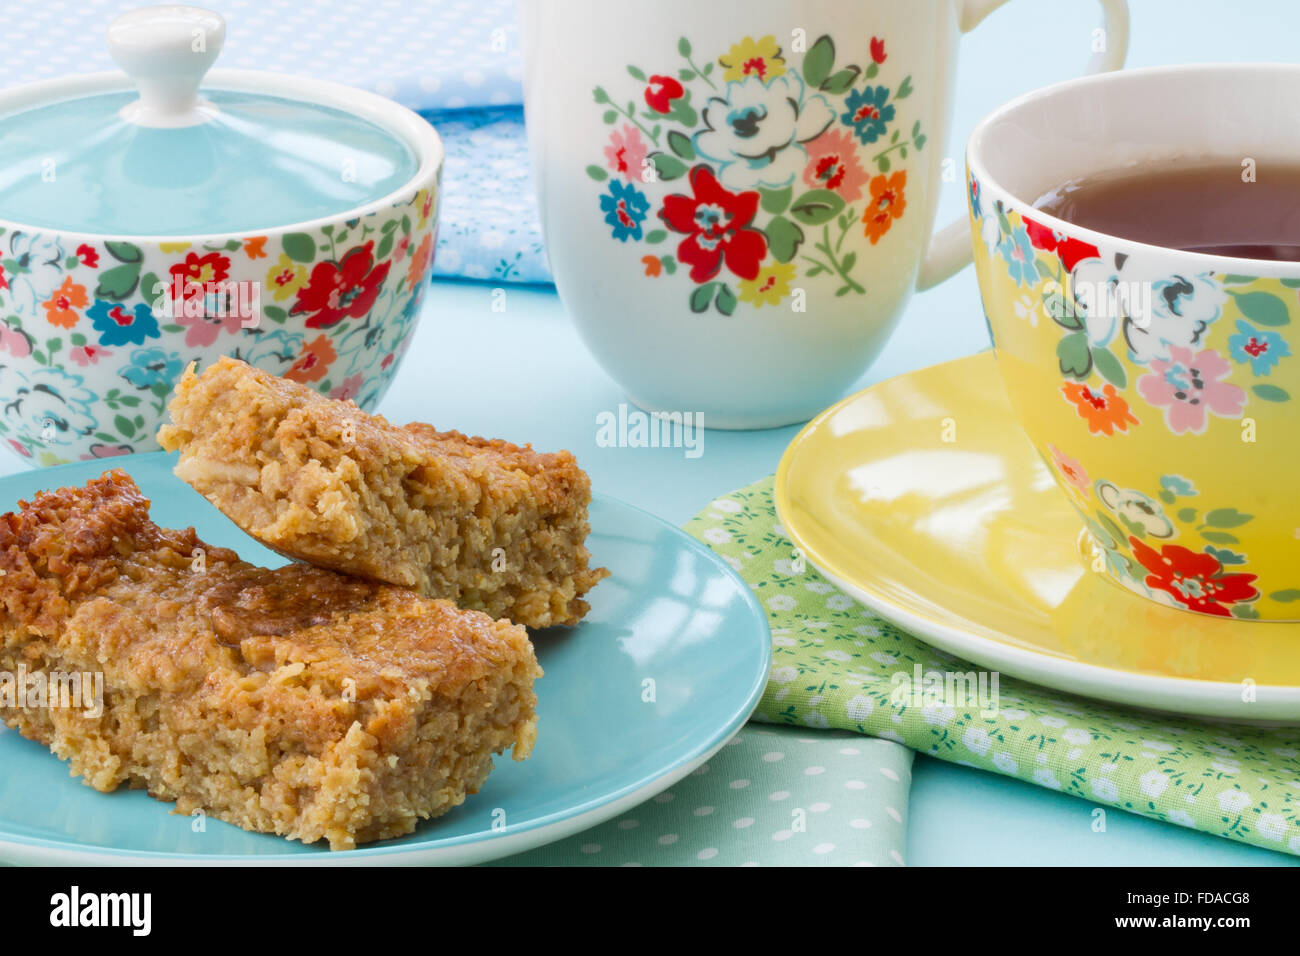 El té de la tarde o de un delicioso té de pastel y una taza de té en la vajilla floral. flapjack y té en una taza y plato florecido como snack Foto de stock